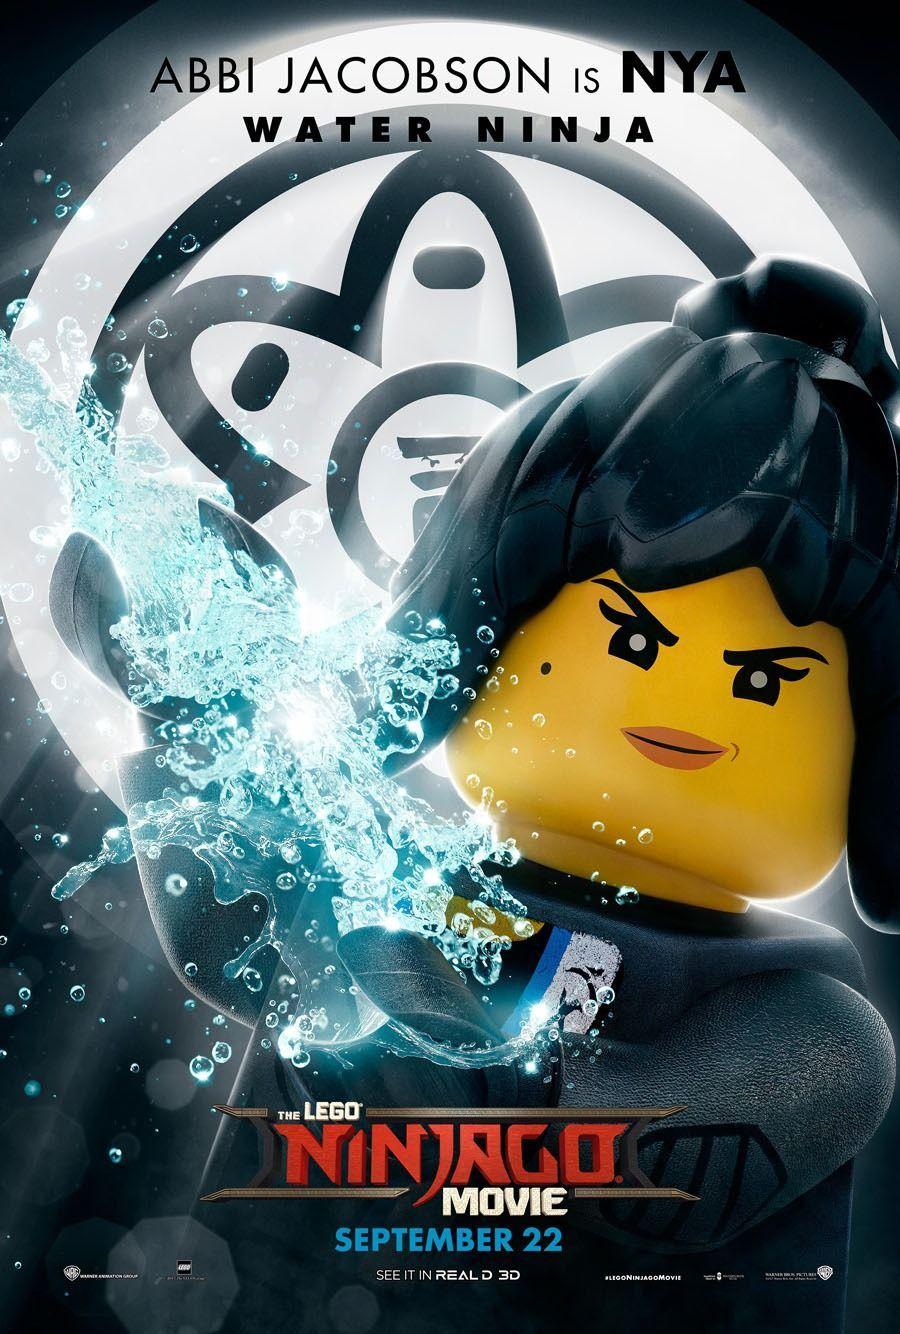 Lego Ninjago Nya Wallpapers - Top Free Lego Ninjago Nya ...